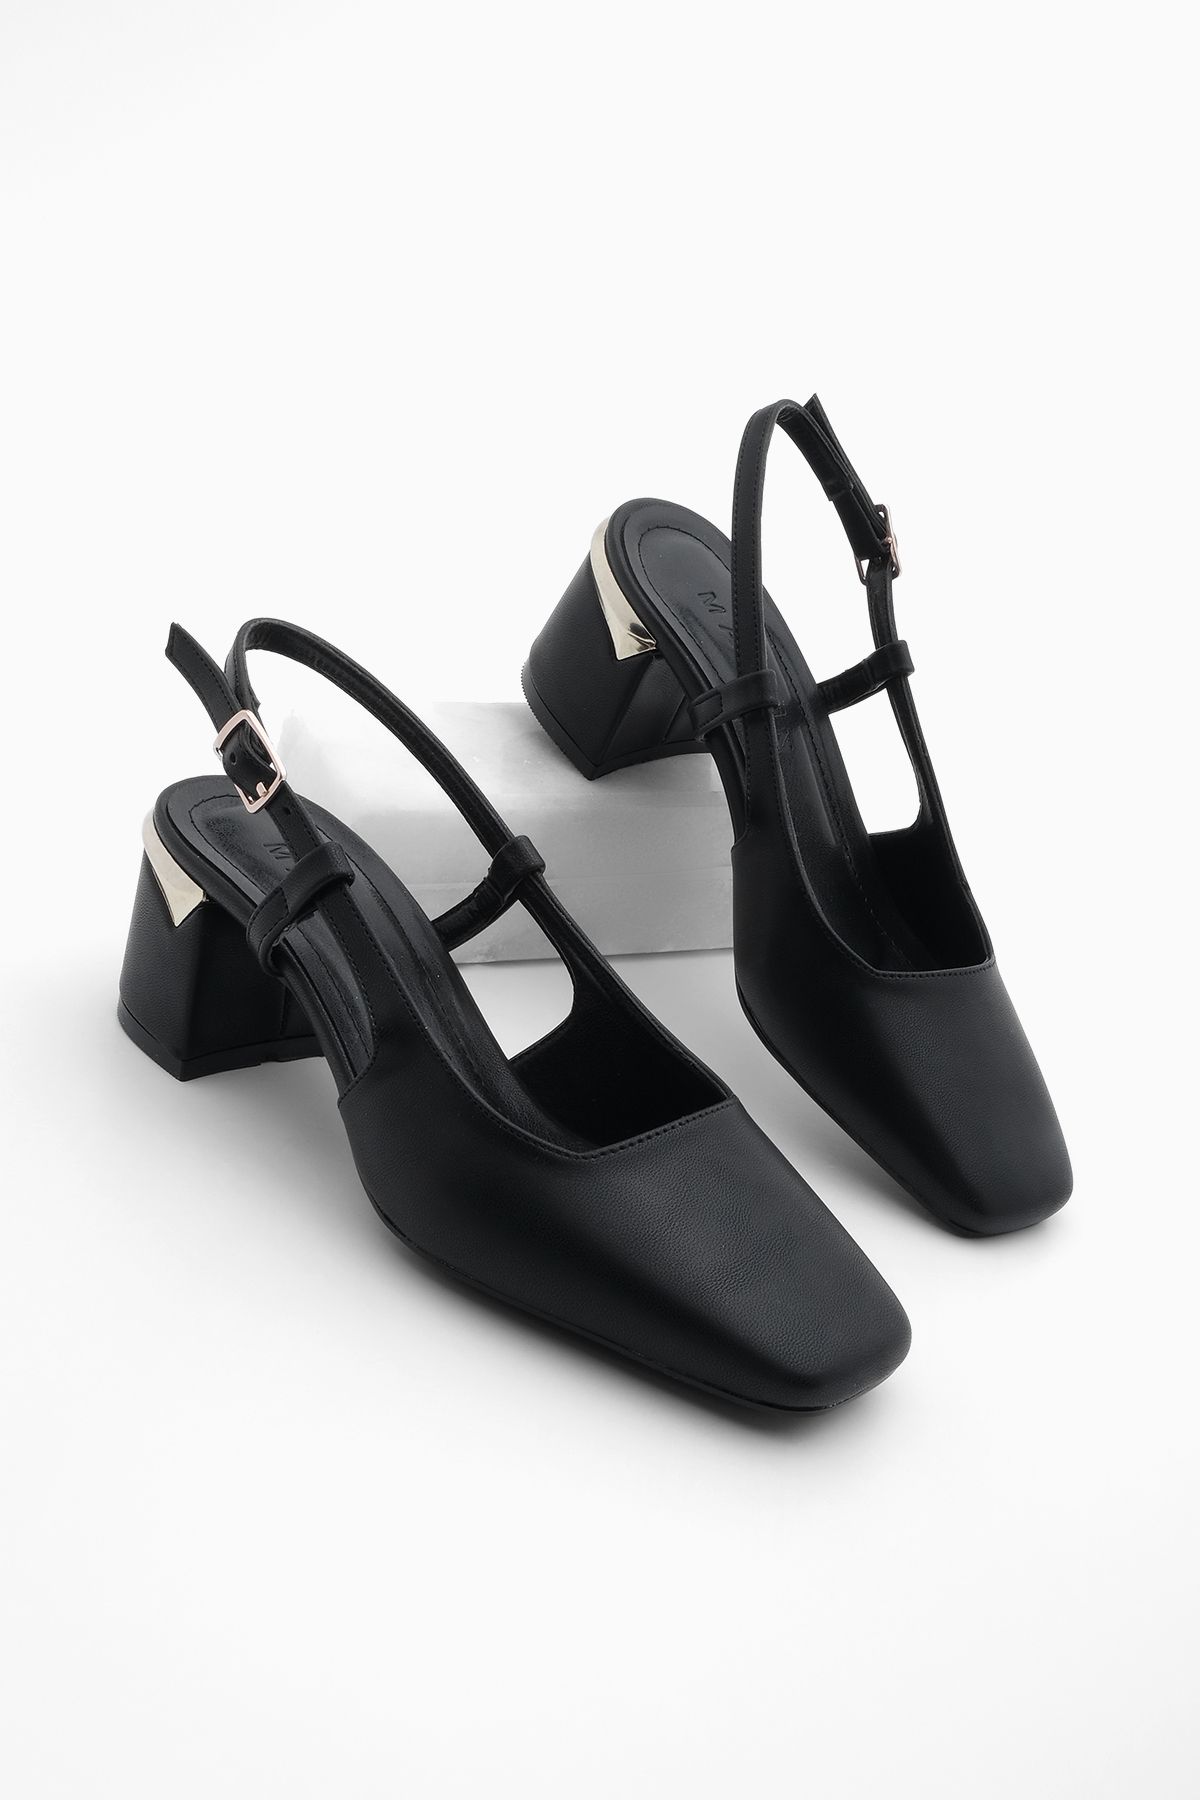 Marjin Kadın Kalın Topuk Arkası Açık Atkılı Klasik Topuklu Ayakkabı Likay Siyah